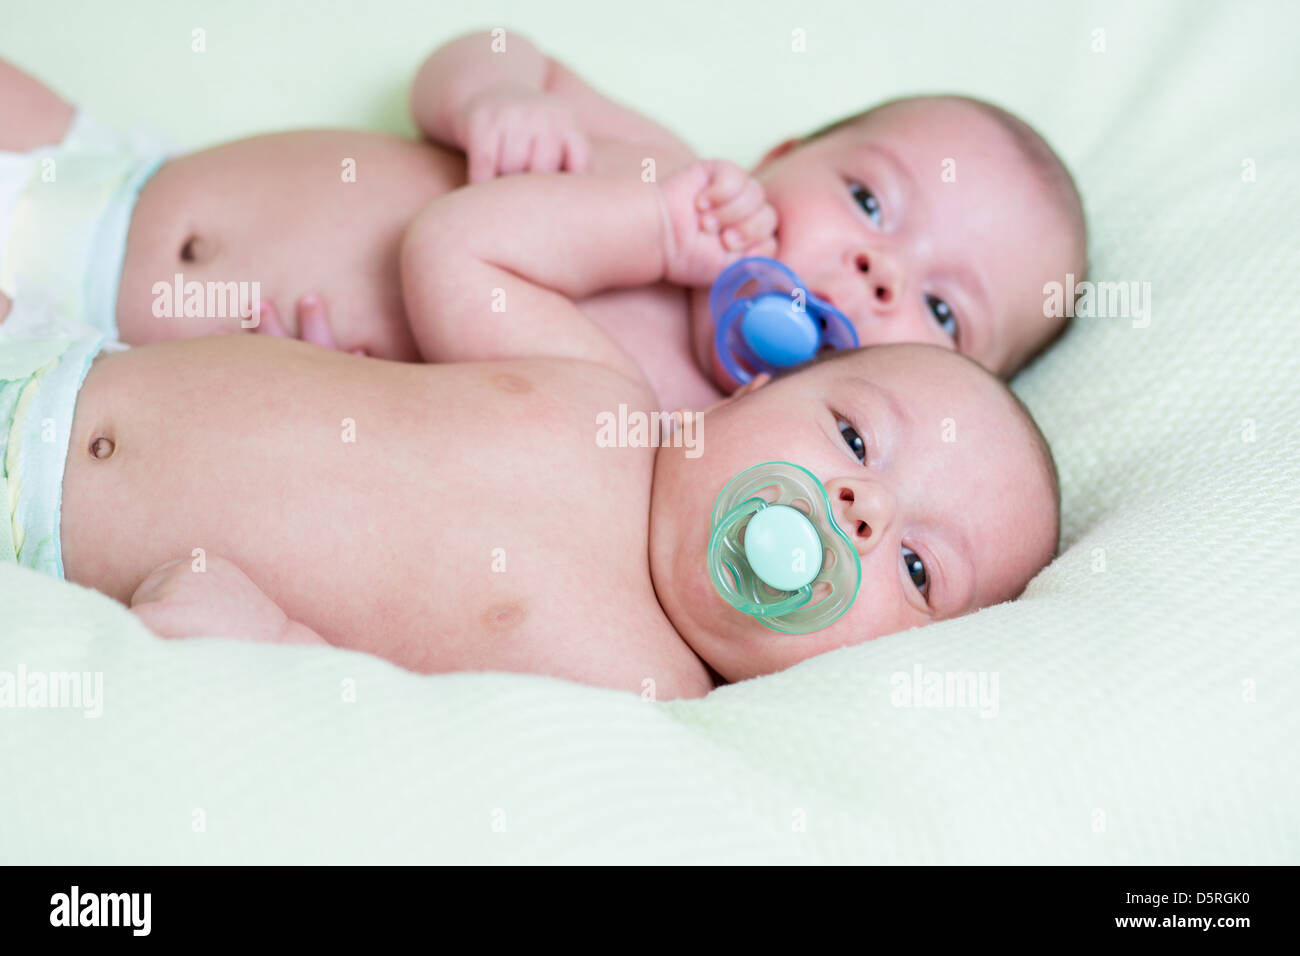 Drôle de bébé nouveau-né des jumeaux gisant à côté d'autres Banque D'Images